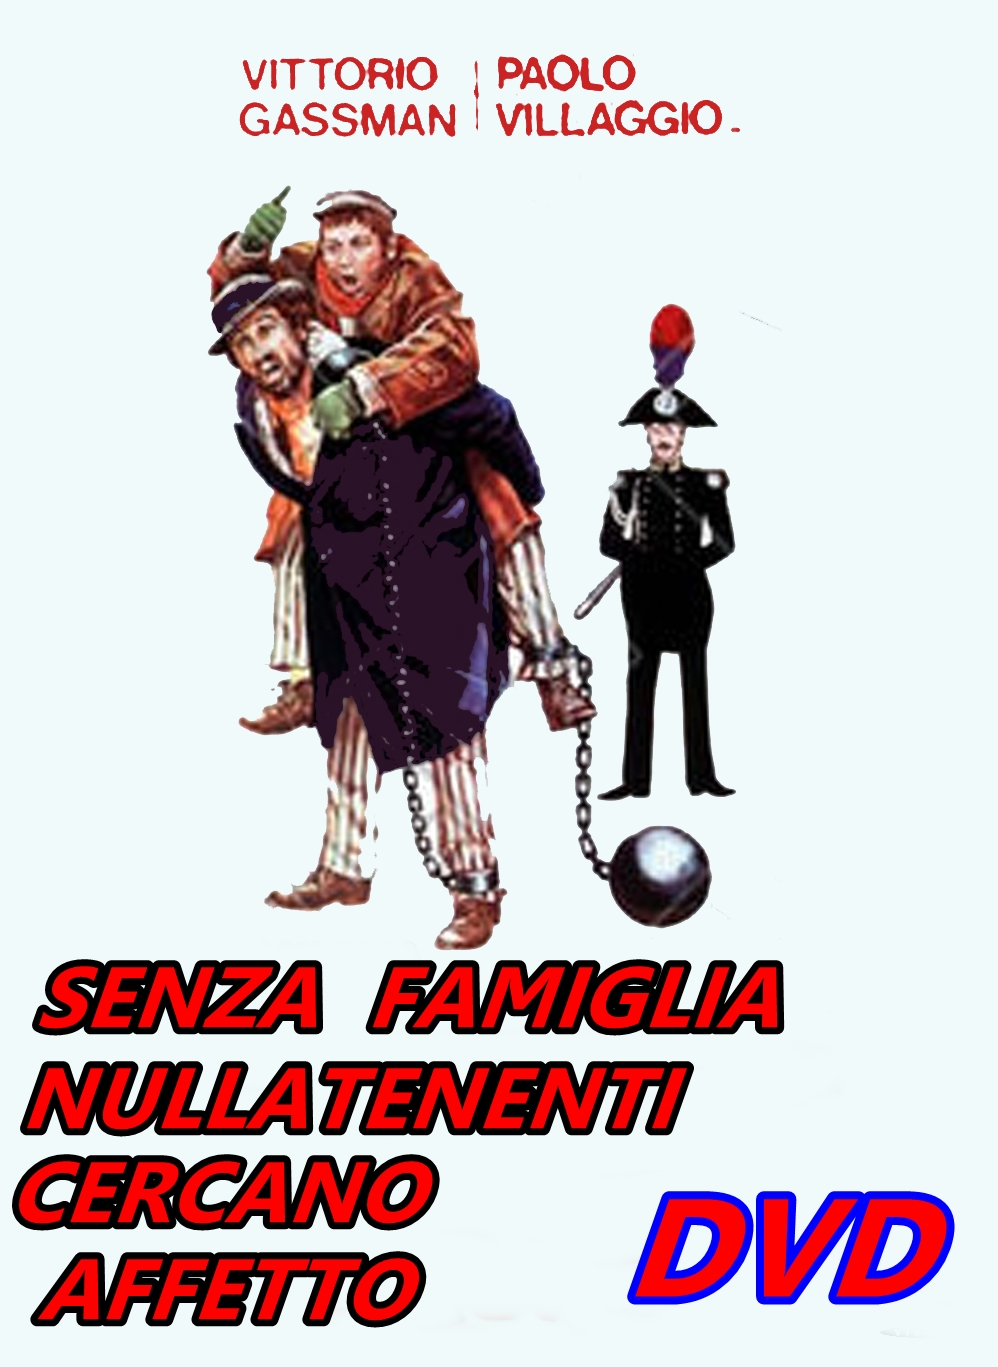 SENZA_FAMIGLIA_NULLATENENTI_CERCANO_AFFETTO_DVD_1972_Vittorio_Gassman_paolo_villaggio_